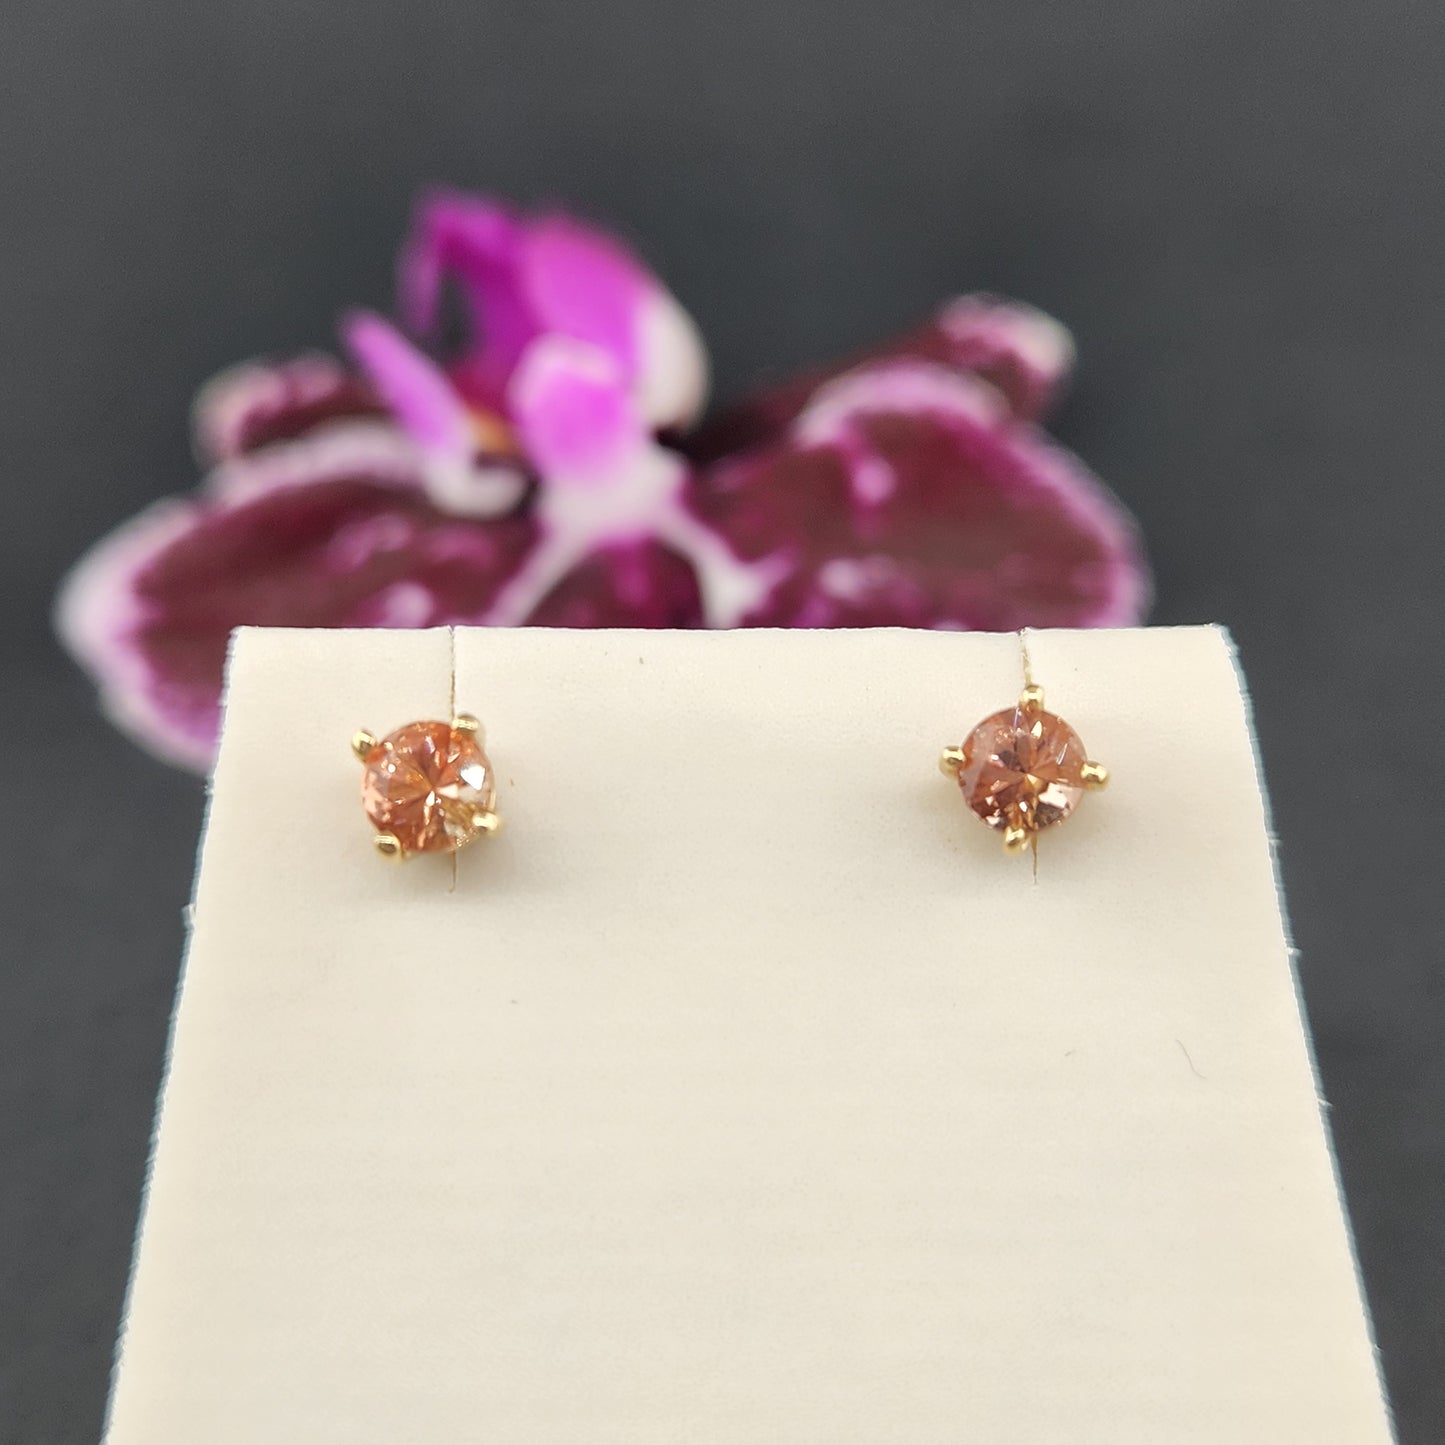 0.45 ct Oregon Sunstones earring set in 14 ky gold 4 mm